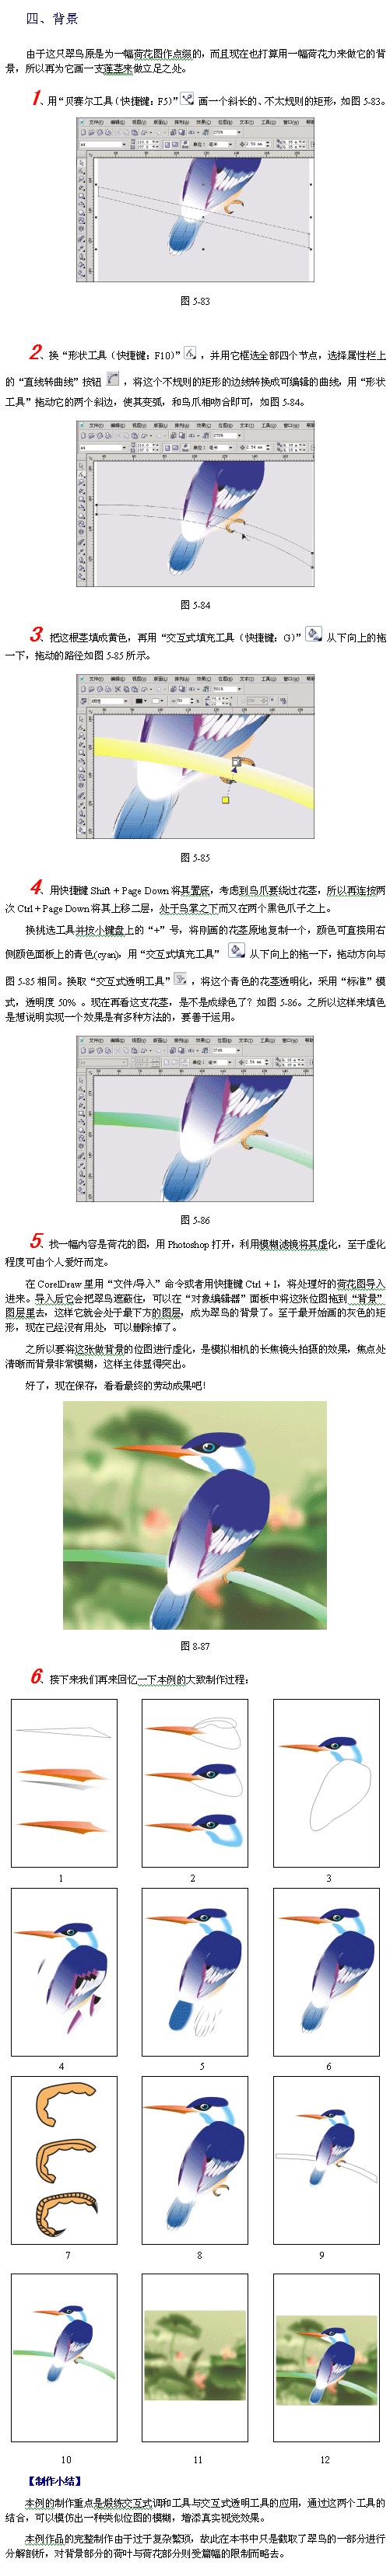 CDR模仿绘制出逼真的翠鸟实例教程4